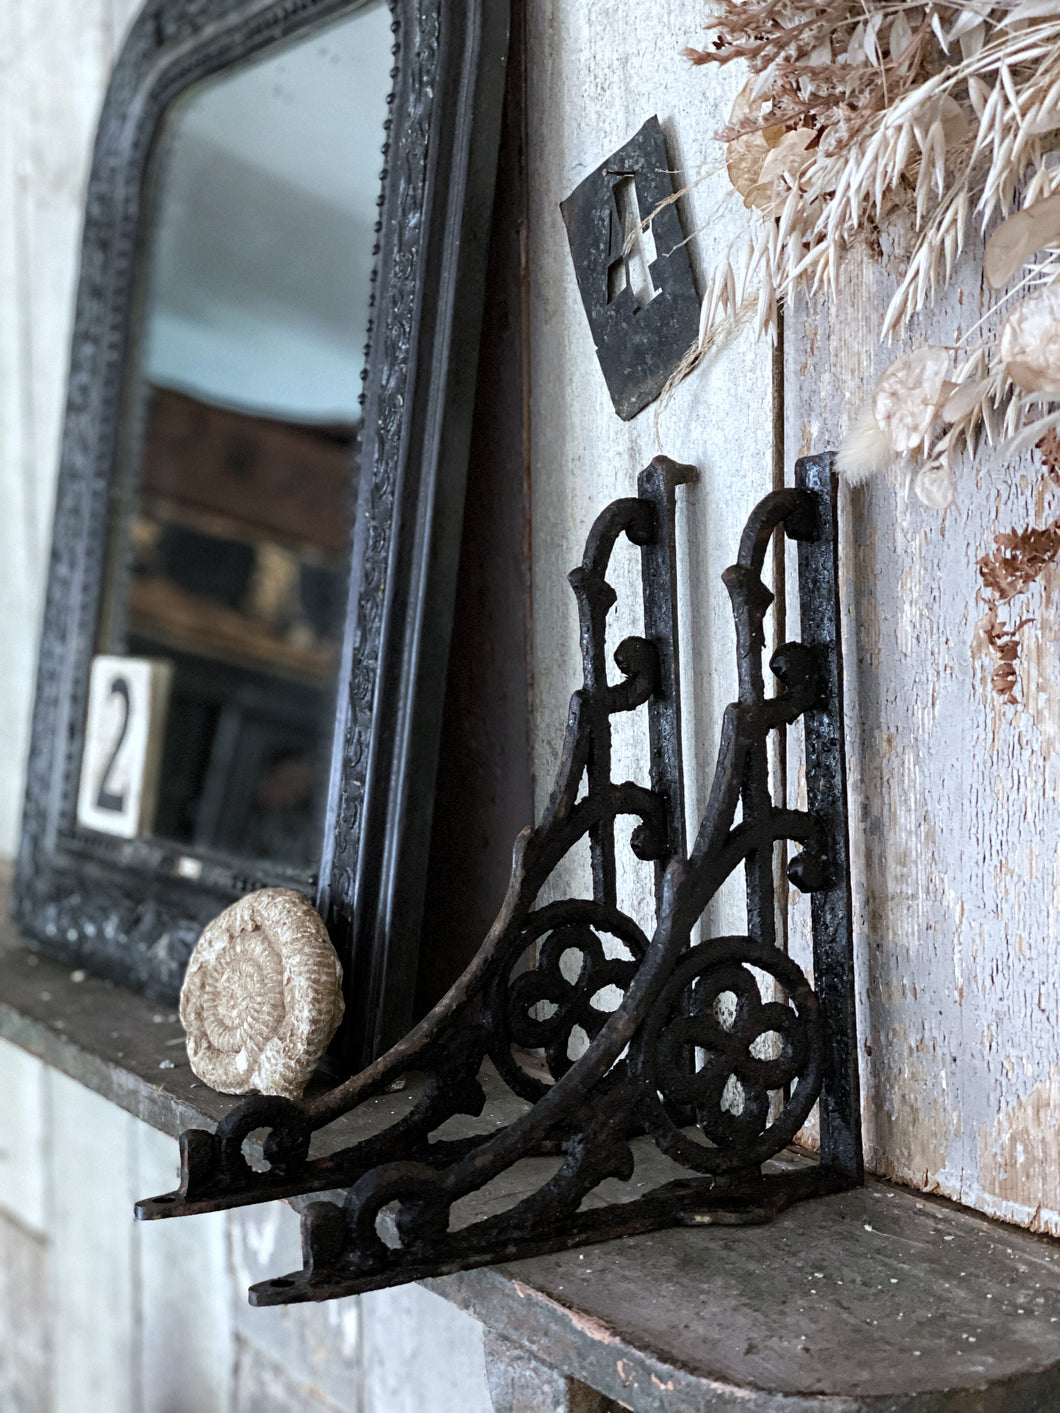 Pair of Original Antique Gothic Wrought Iron Shelf Brackets